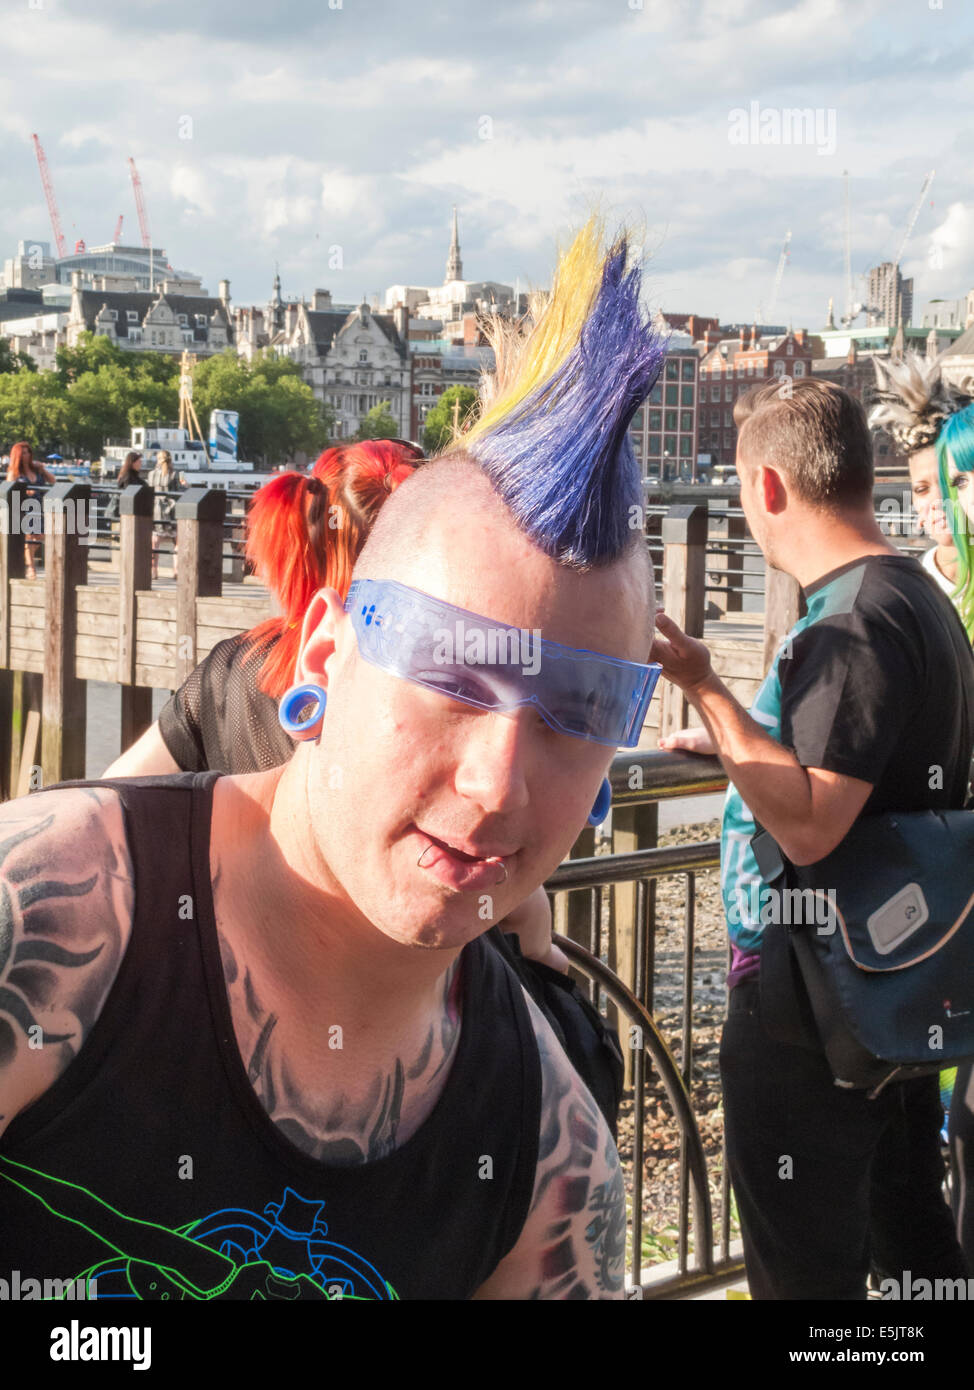 Mode de vie moderne : un jeune homme avec des tatouages, piercings lèvre et un gel de couleur punk Mohican hairstyle et lunettes cool blue, South Bank, Londres Banque D'Images